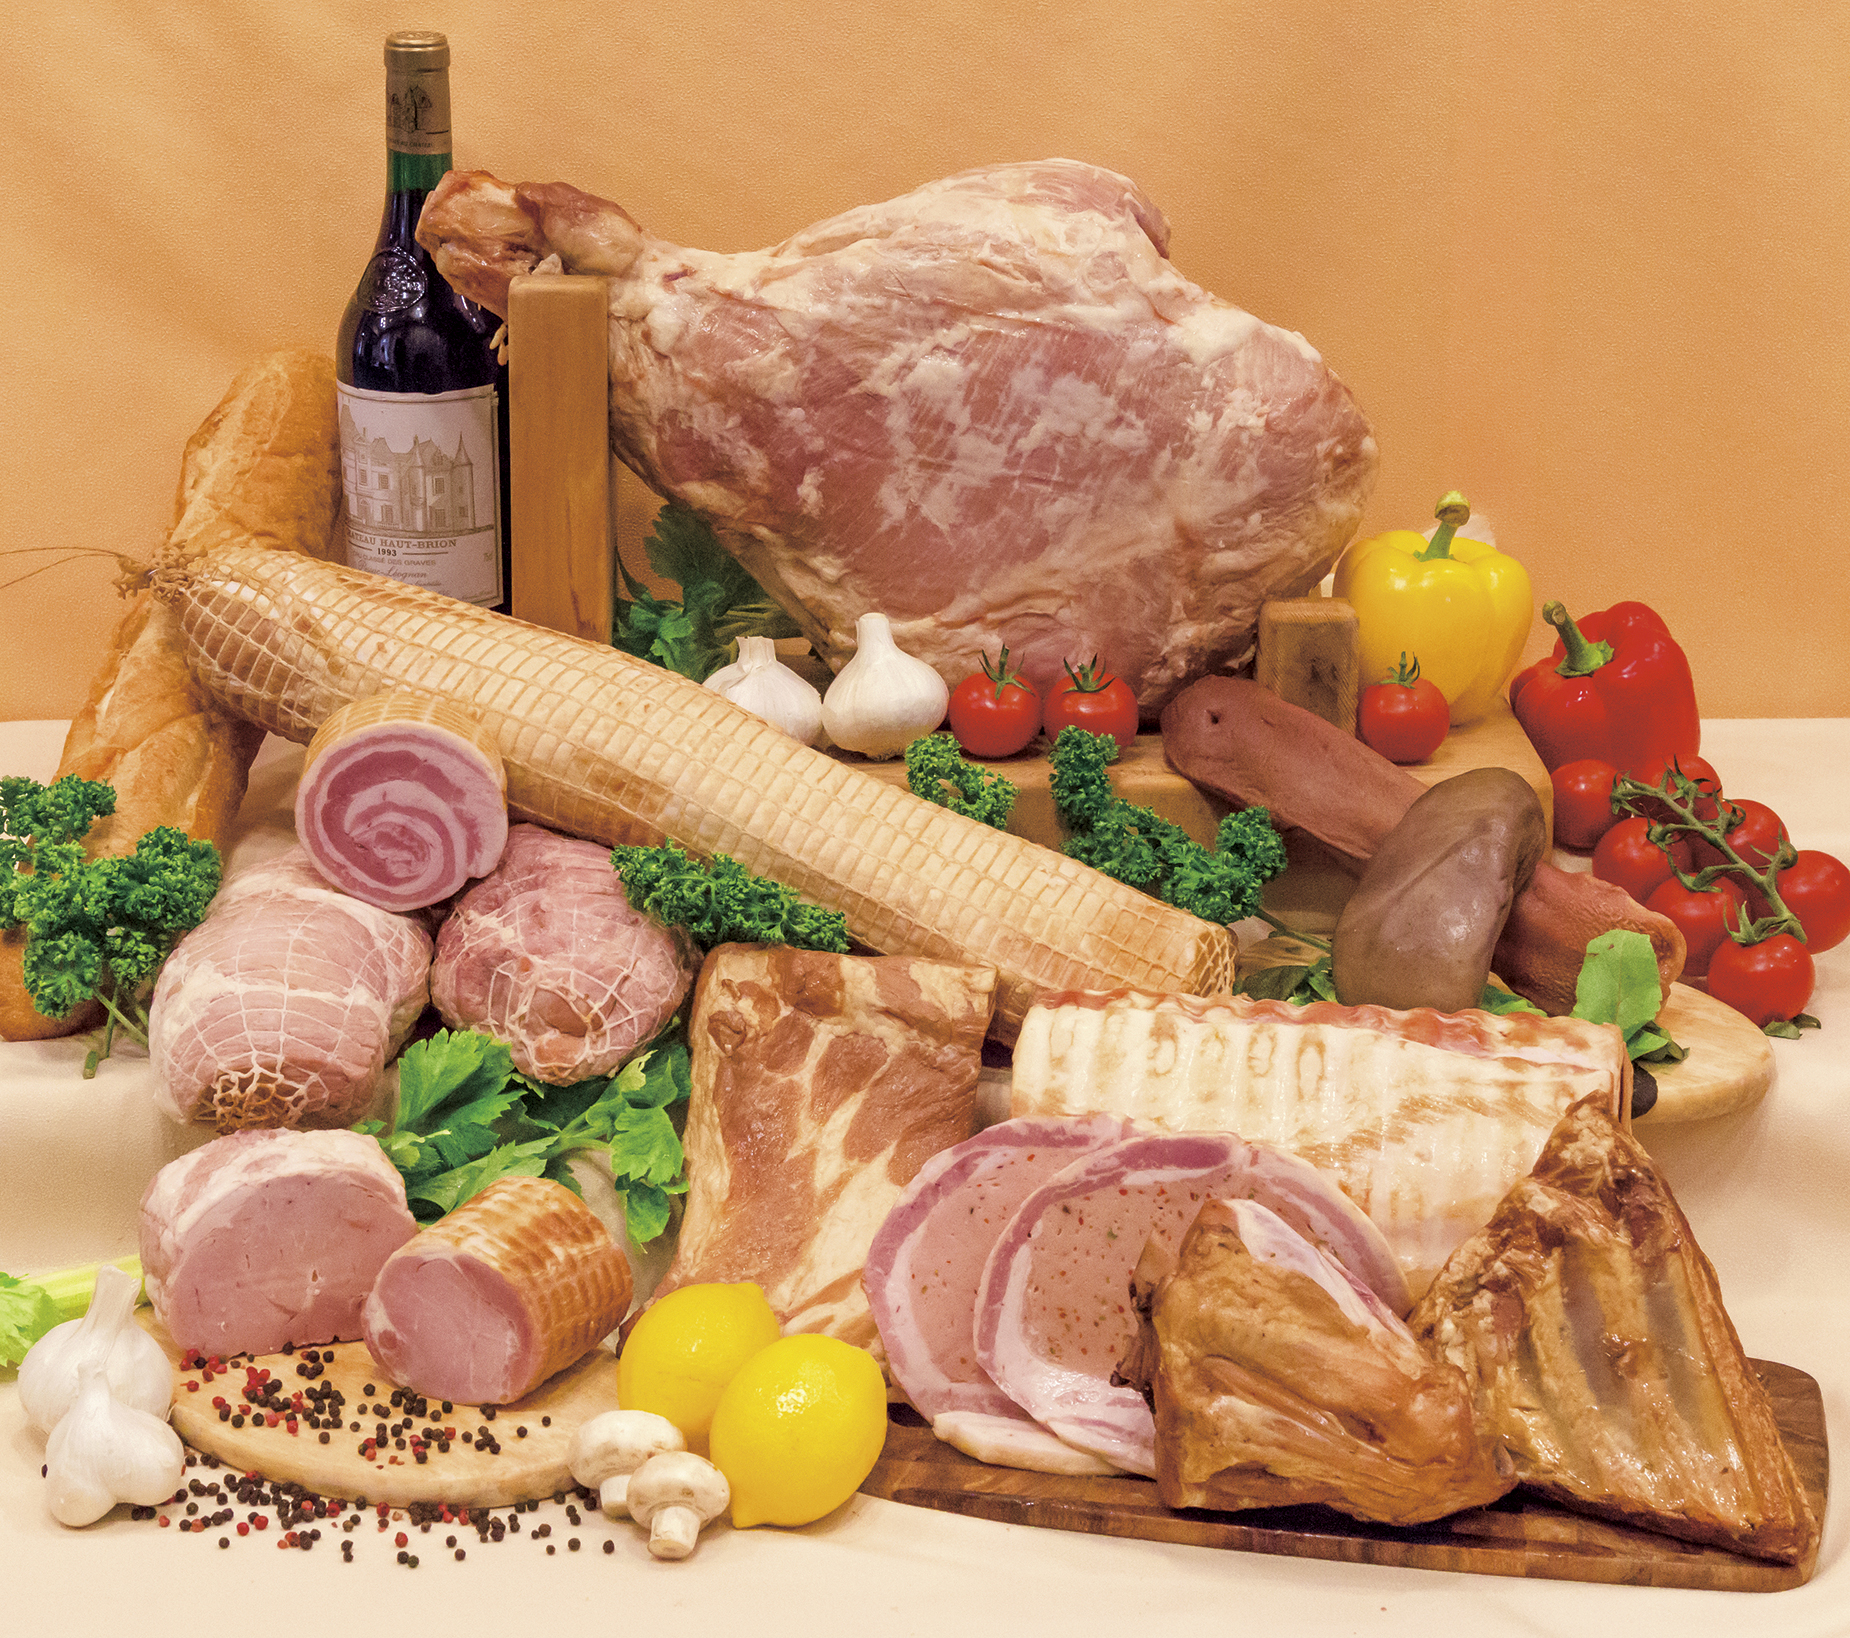 腸詰屋 | 腸詰屋の手作りハム・ソーセージ・サラミは国内産の豚肉や牛肉を使用した安全でおいしい品々です。